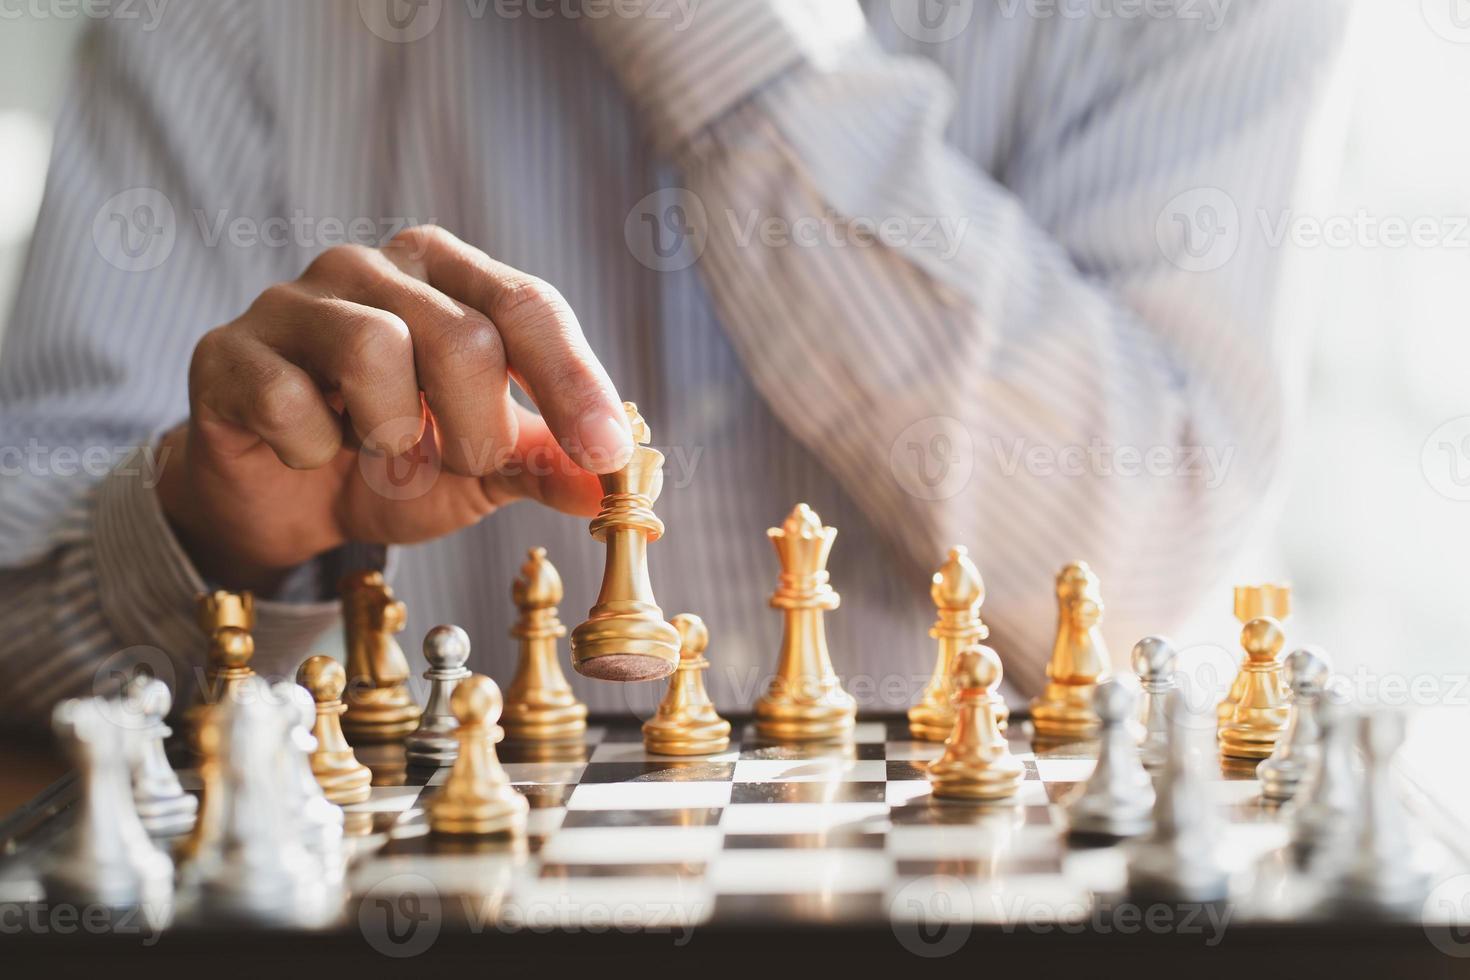 mão de empresário movendo a figura do rei de xadrez de ouro e oponente de  xeque